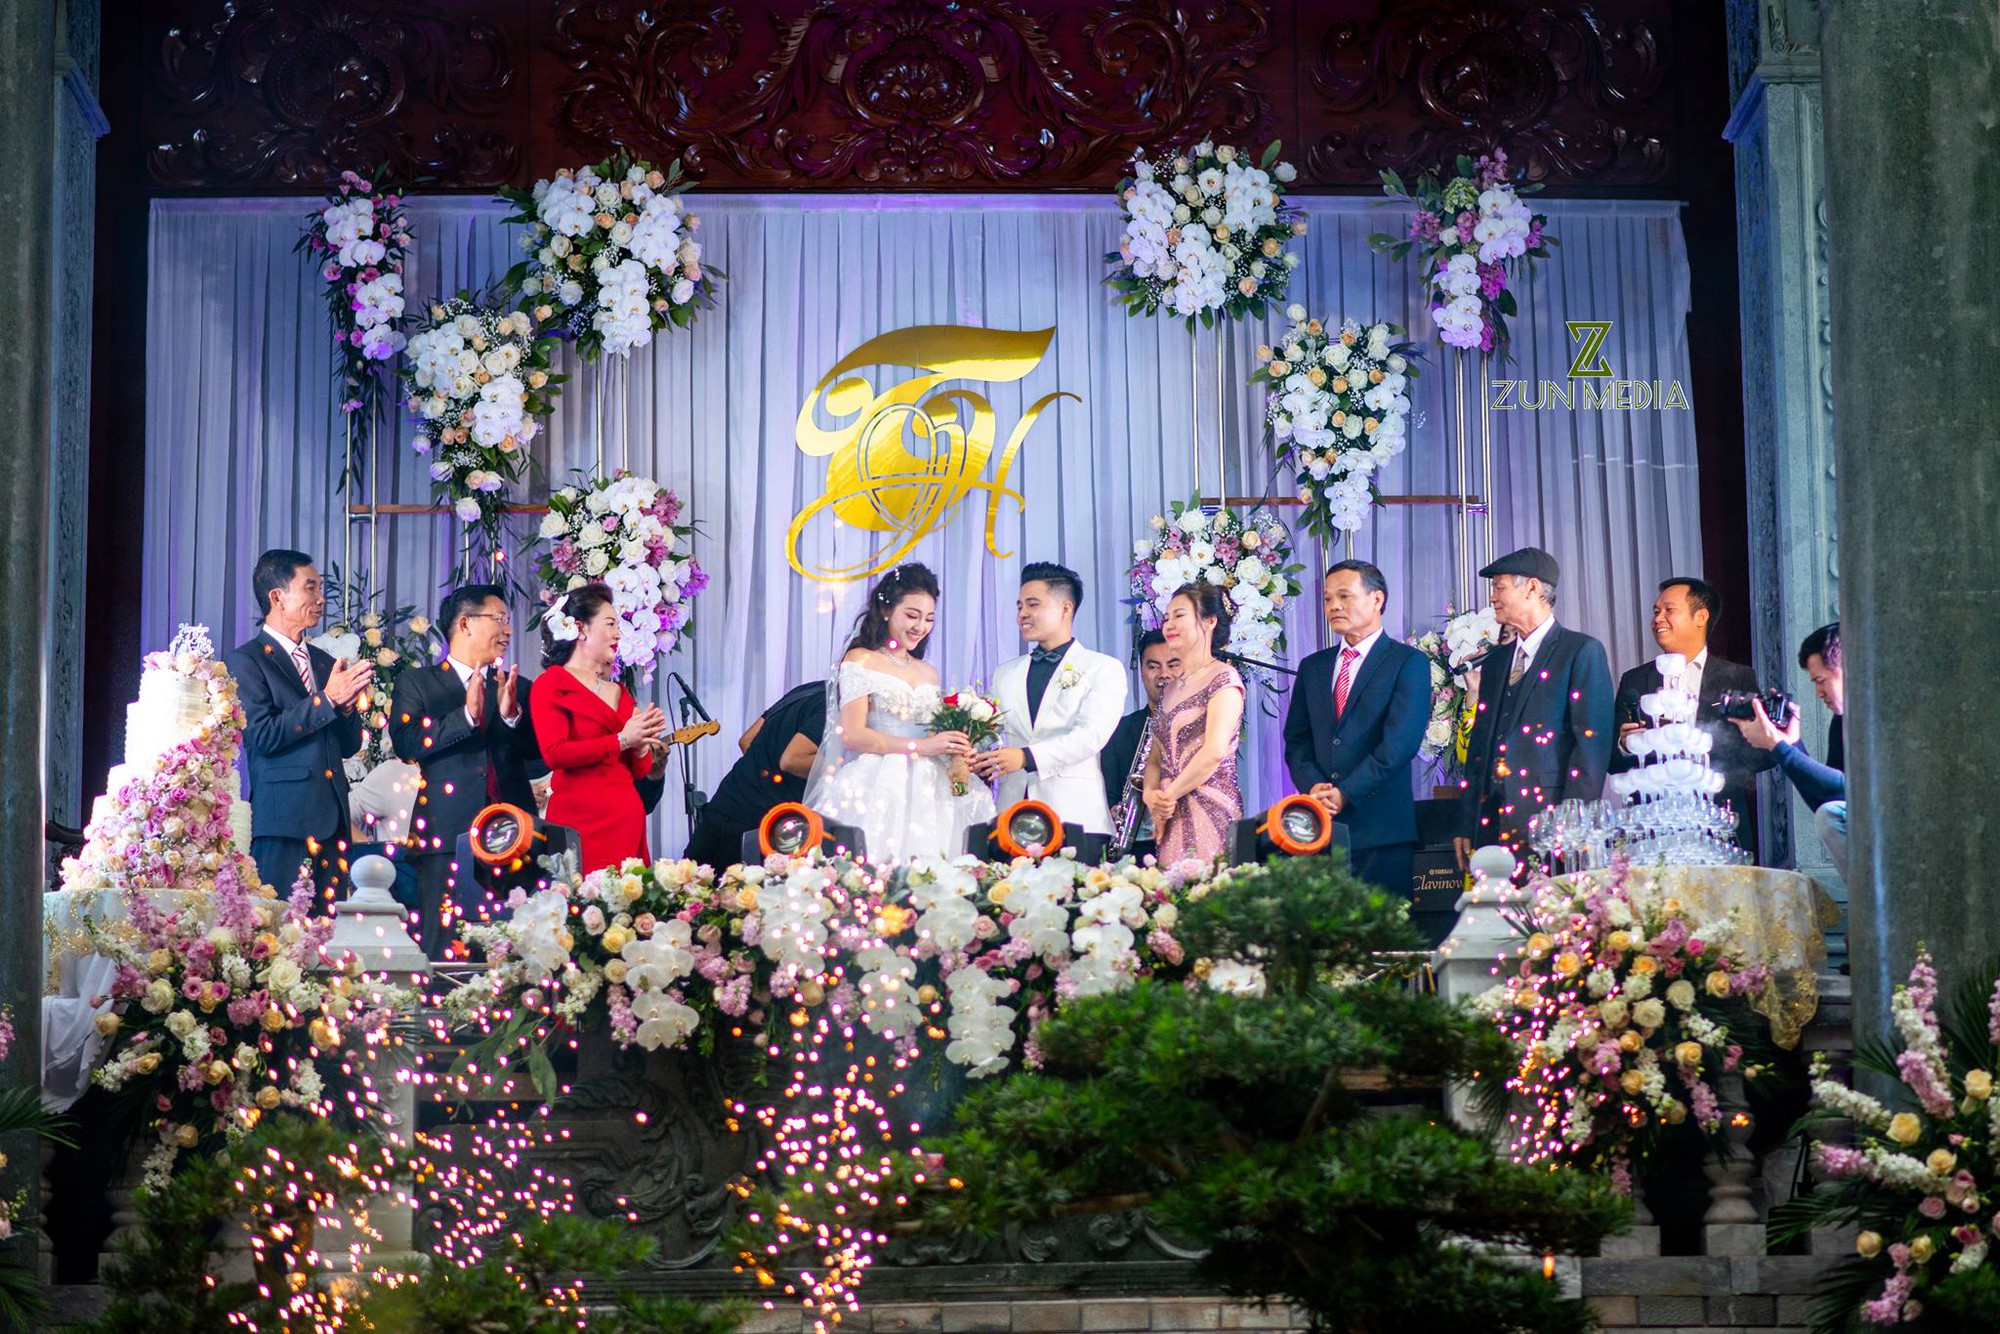 Bộ ảnh cưới đẹp như mơ cùng gia thế khủng của cô dâu vàng đeo trĩu cổ sống trong lâu đài 7 tầng ở Nam Định - Ảnh 7.